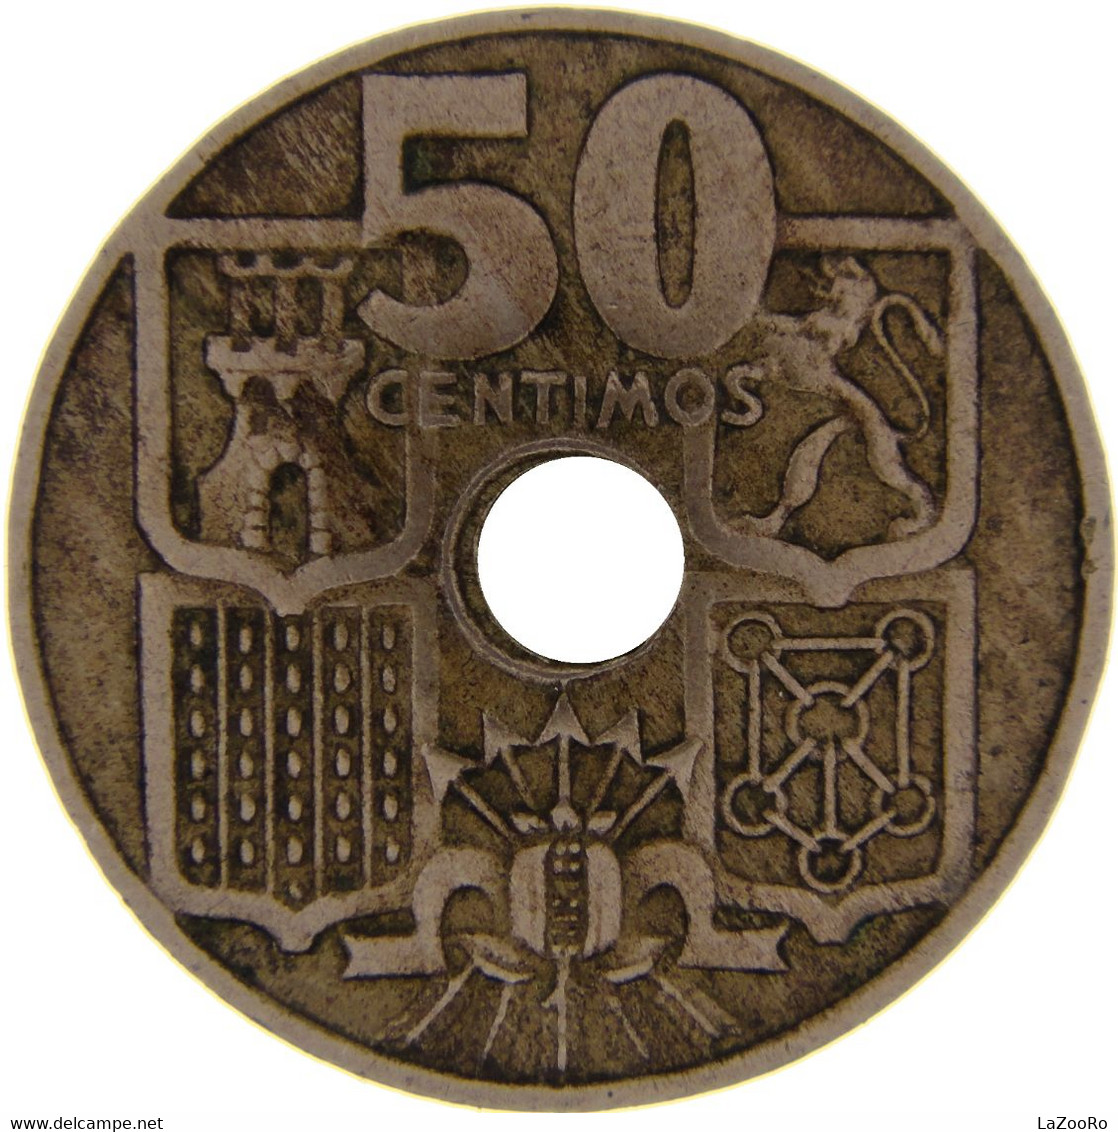 LaZooRo: Spain 50 Centimos 1951 XF / UNC - 50 Centiem